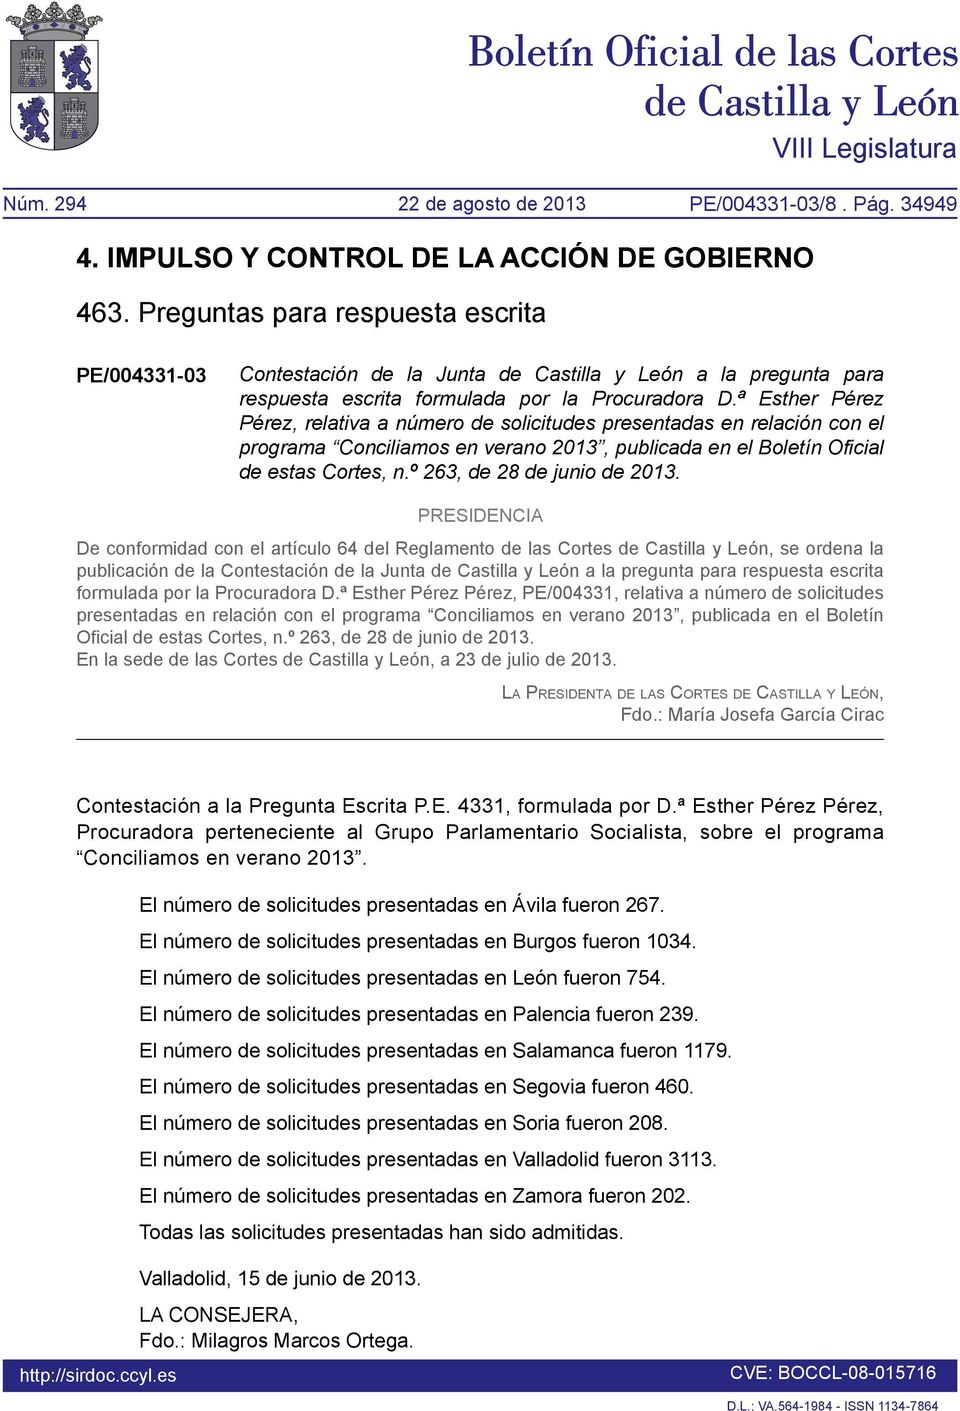 ª Esther Pérez Pérez, relativa a número de solicitudes presentadas en relación con el programa Conciliamos en verano 2013, publicada en el Boletín Oficial de estas Cortes, n.